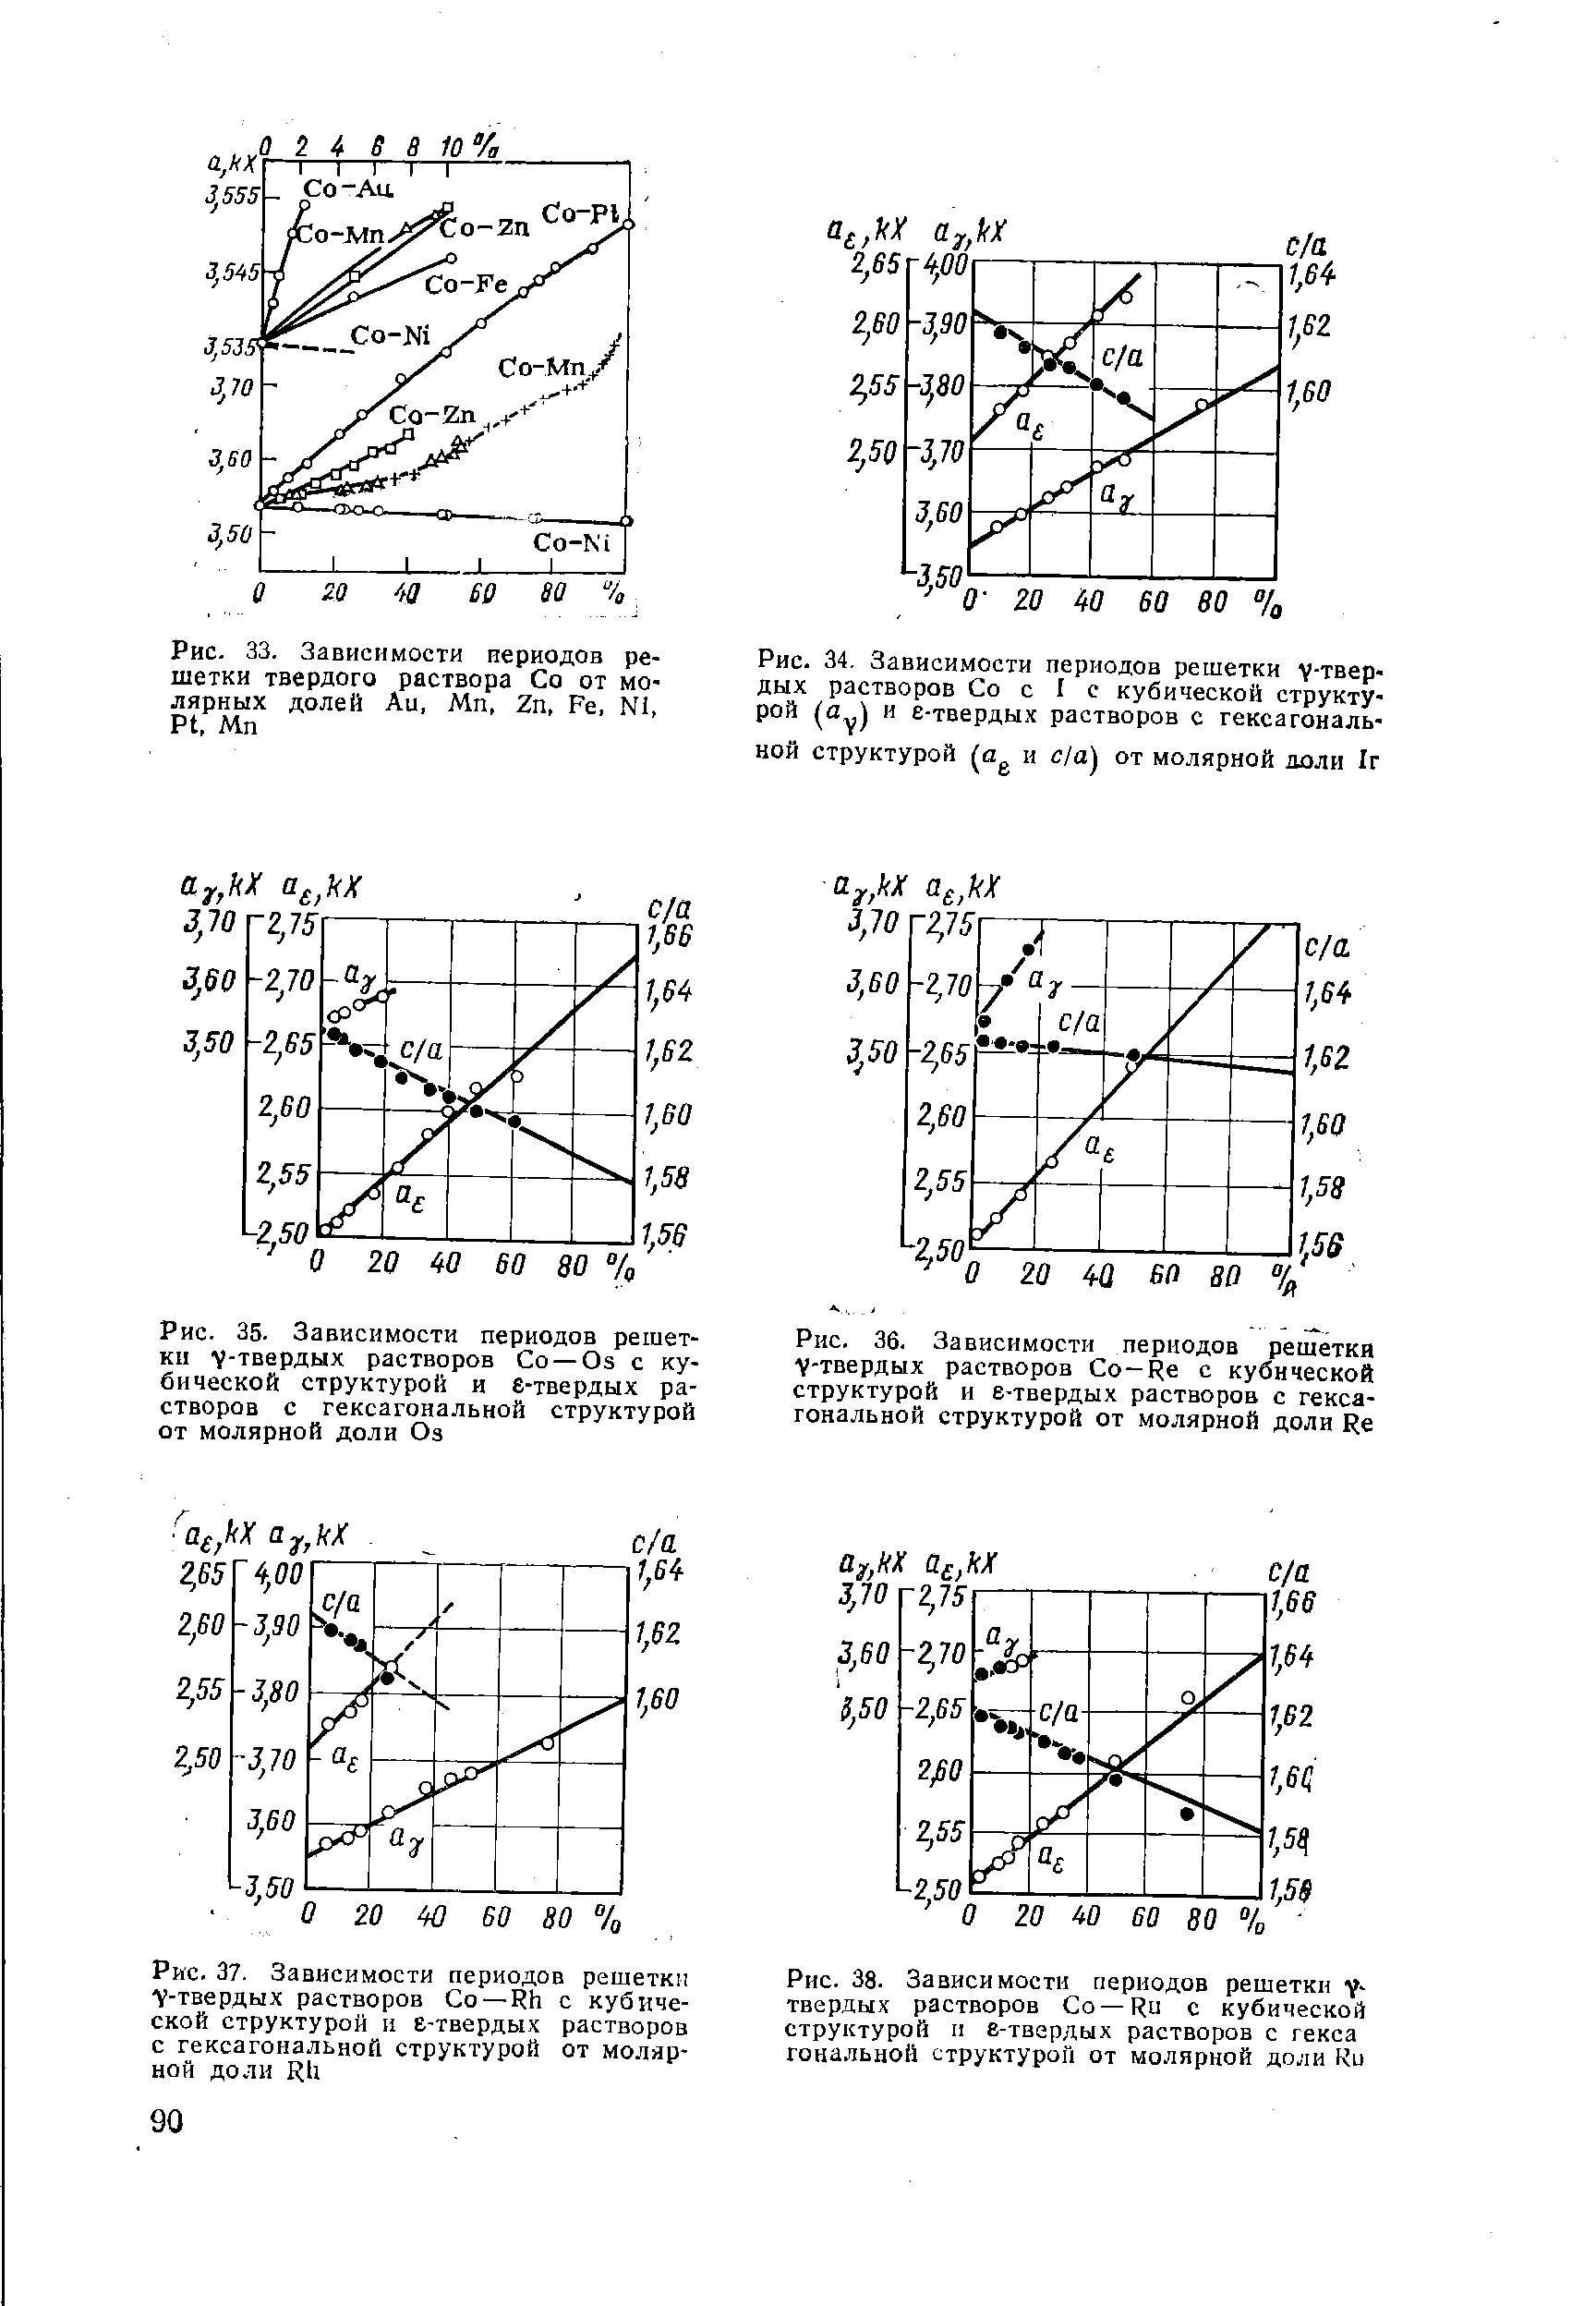 Рис. 33. Зависимости периодов решетки твердого раствора Со от молярных долей Аи, Мп, Zn, Fe, N1, Pt, Mn
